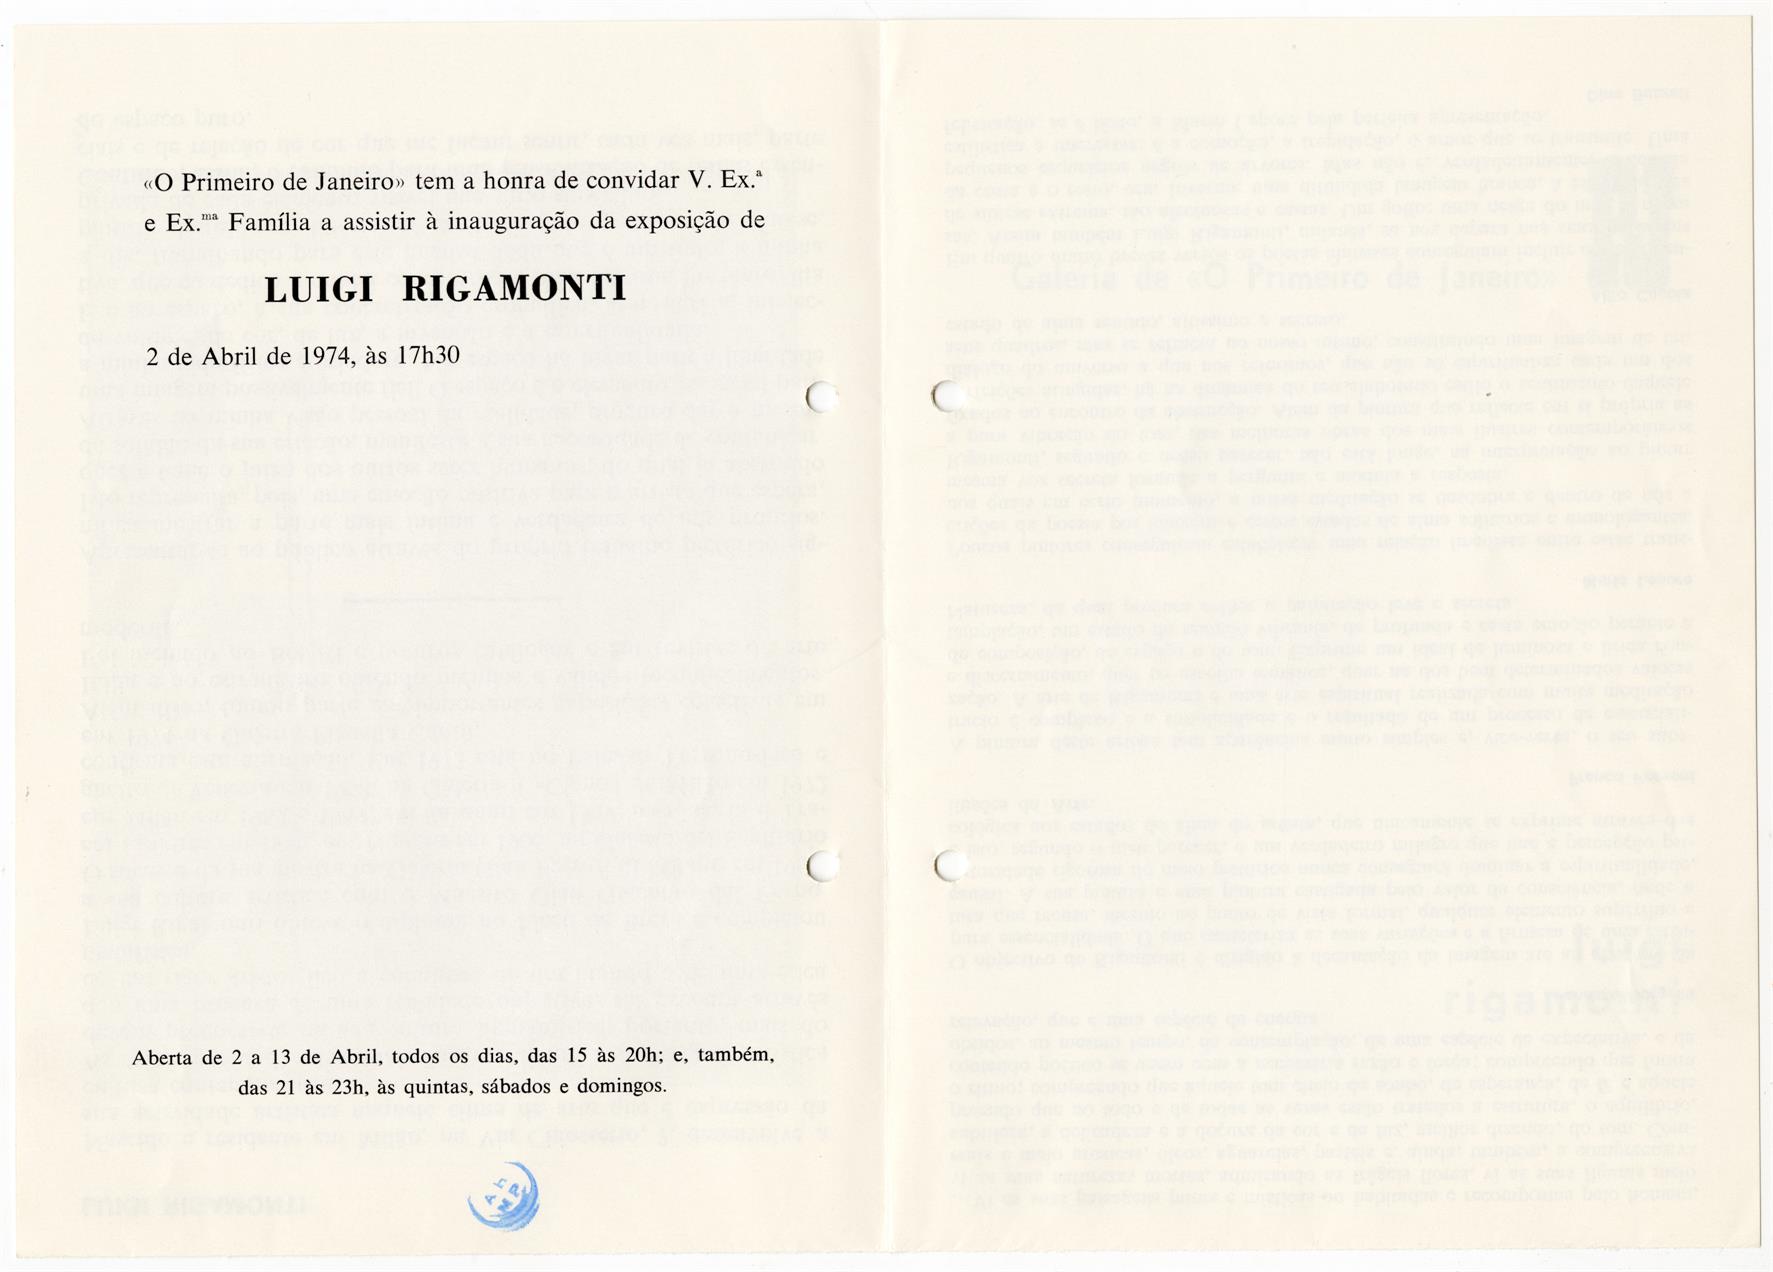 Galeria de O Primeiro de Janeiro: Luigi Rigamonti